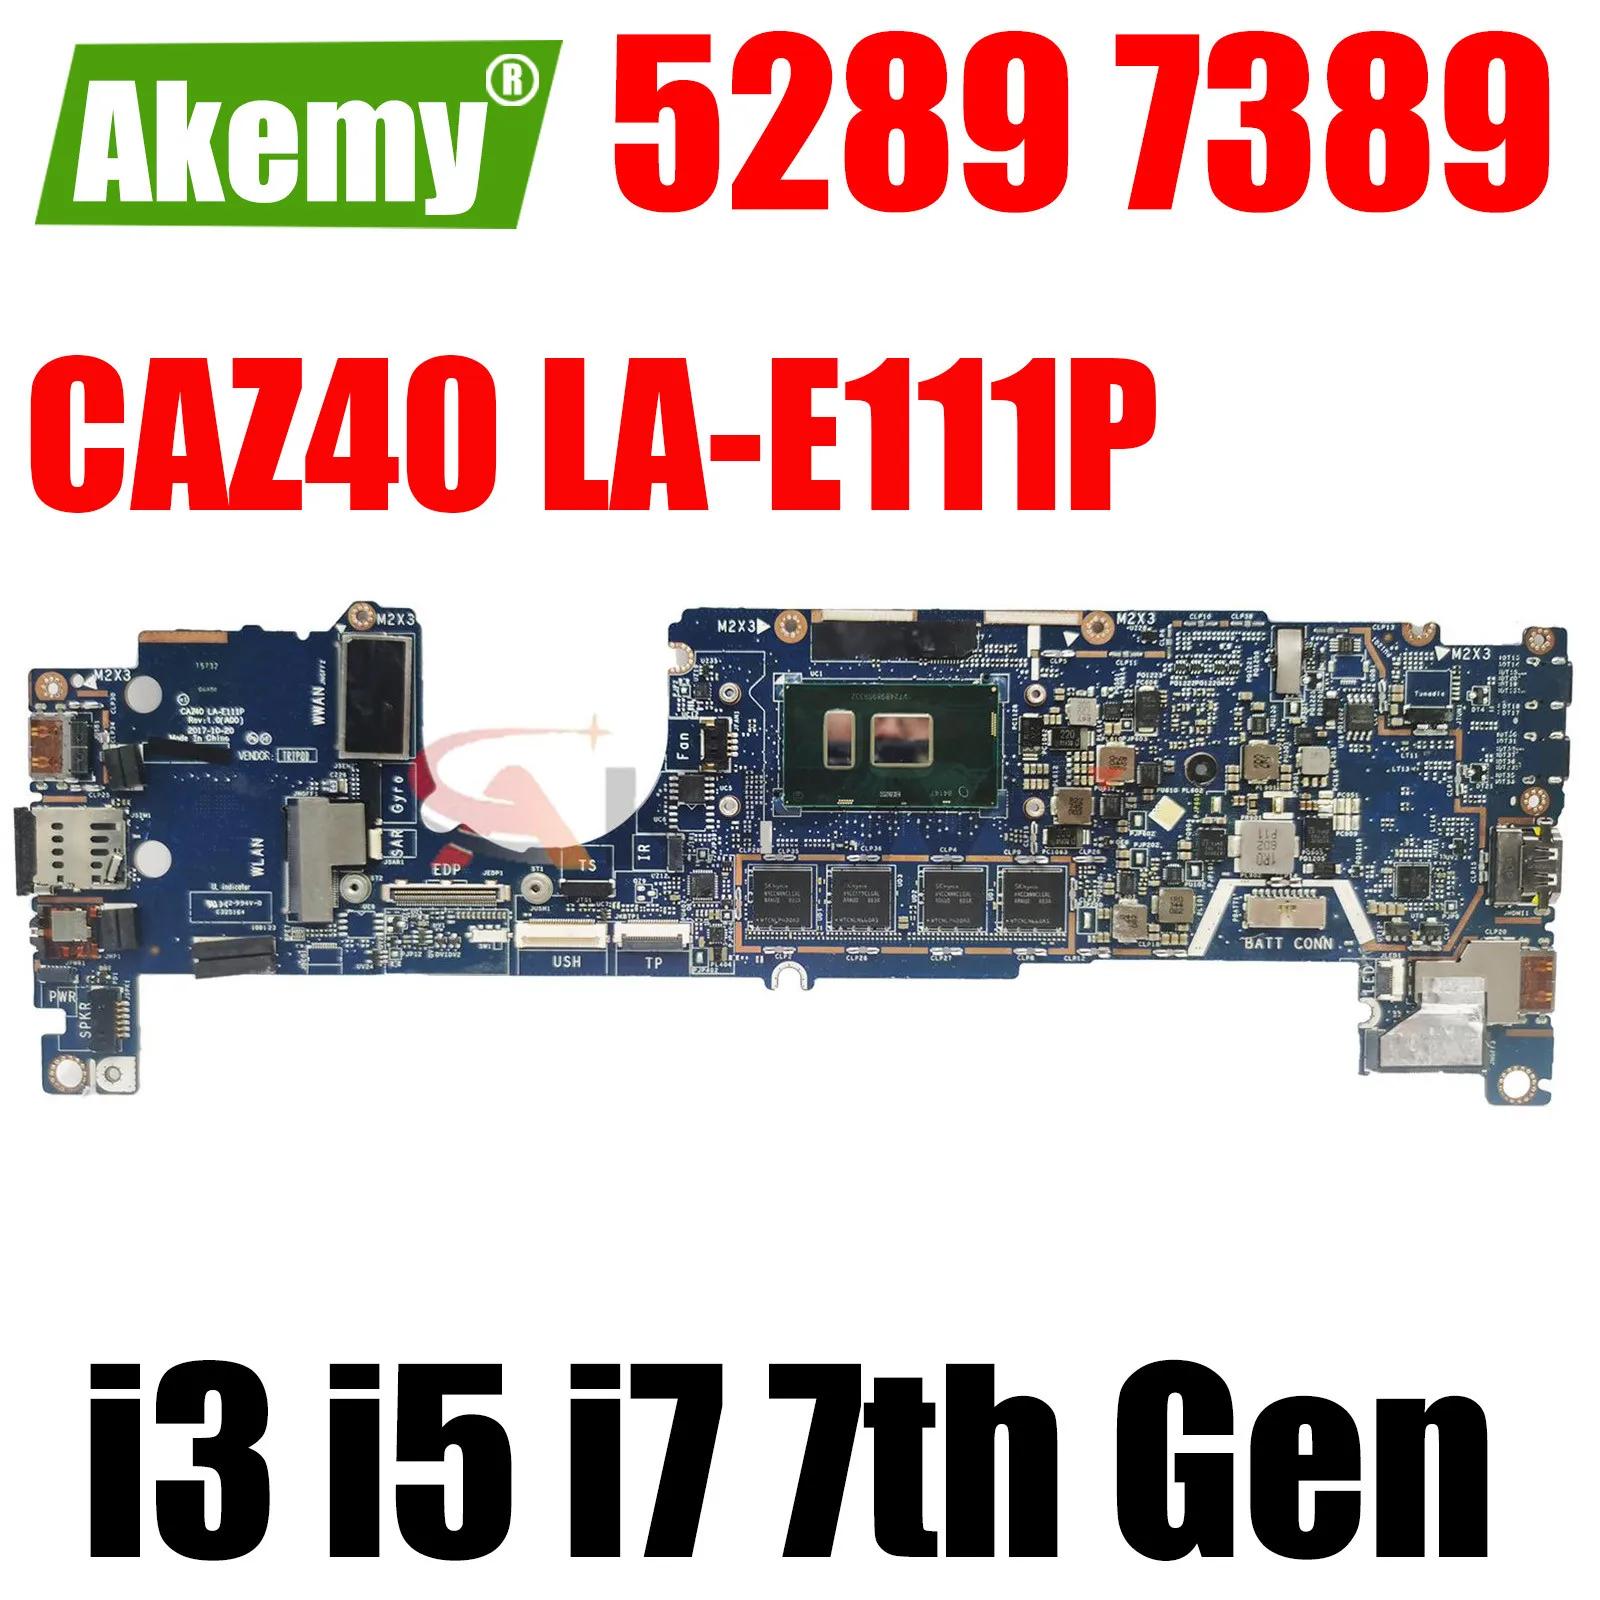 DELL  5289 7389 Ʈ   LA-E111P CN-04T8FJ 0J9XP9   i3 i5 i7 7th Gen CPU 4G 8G 16G RAM